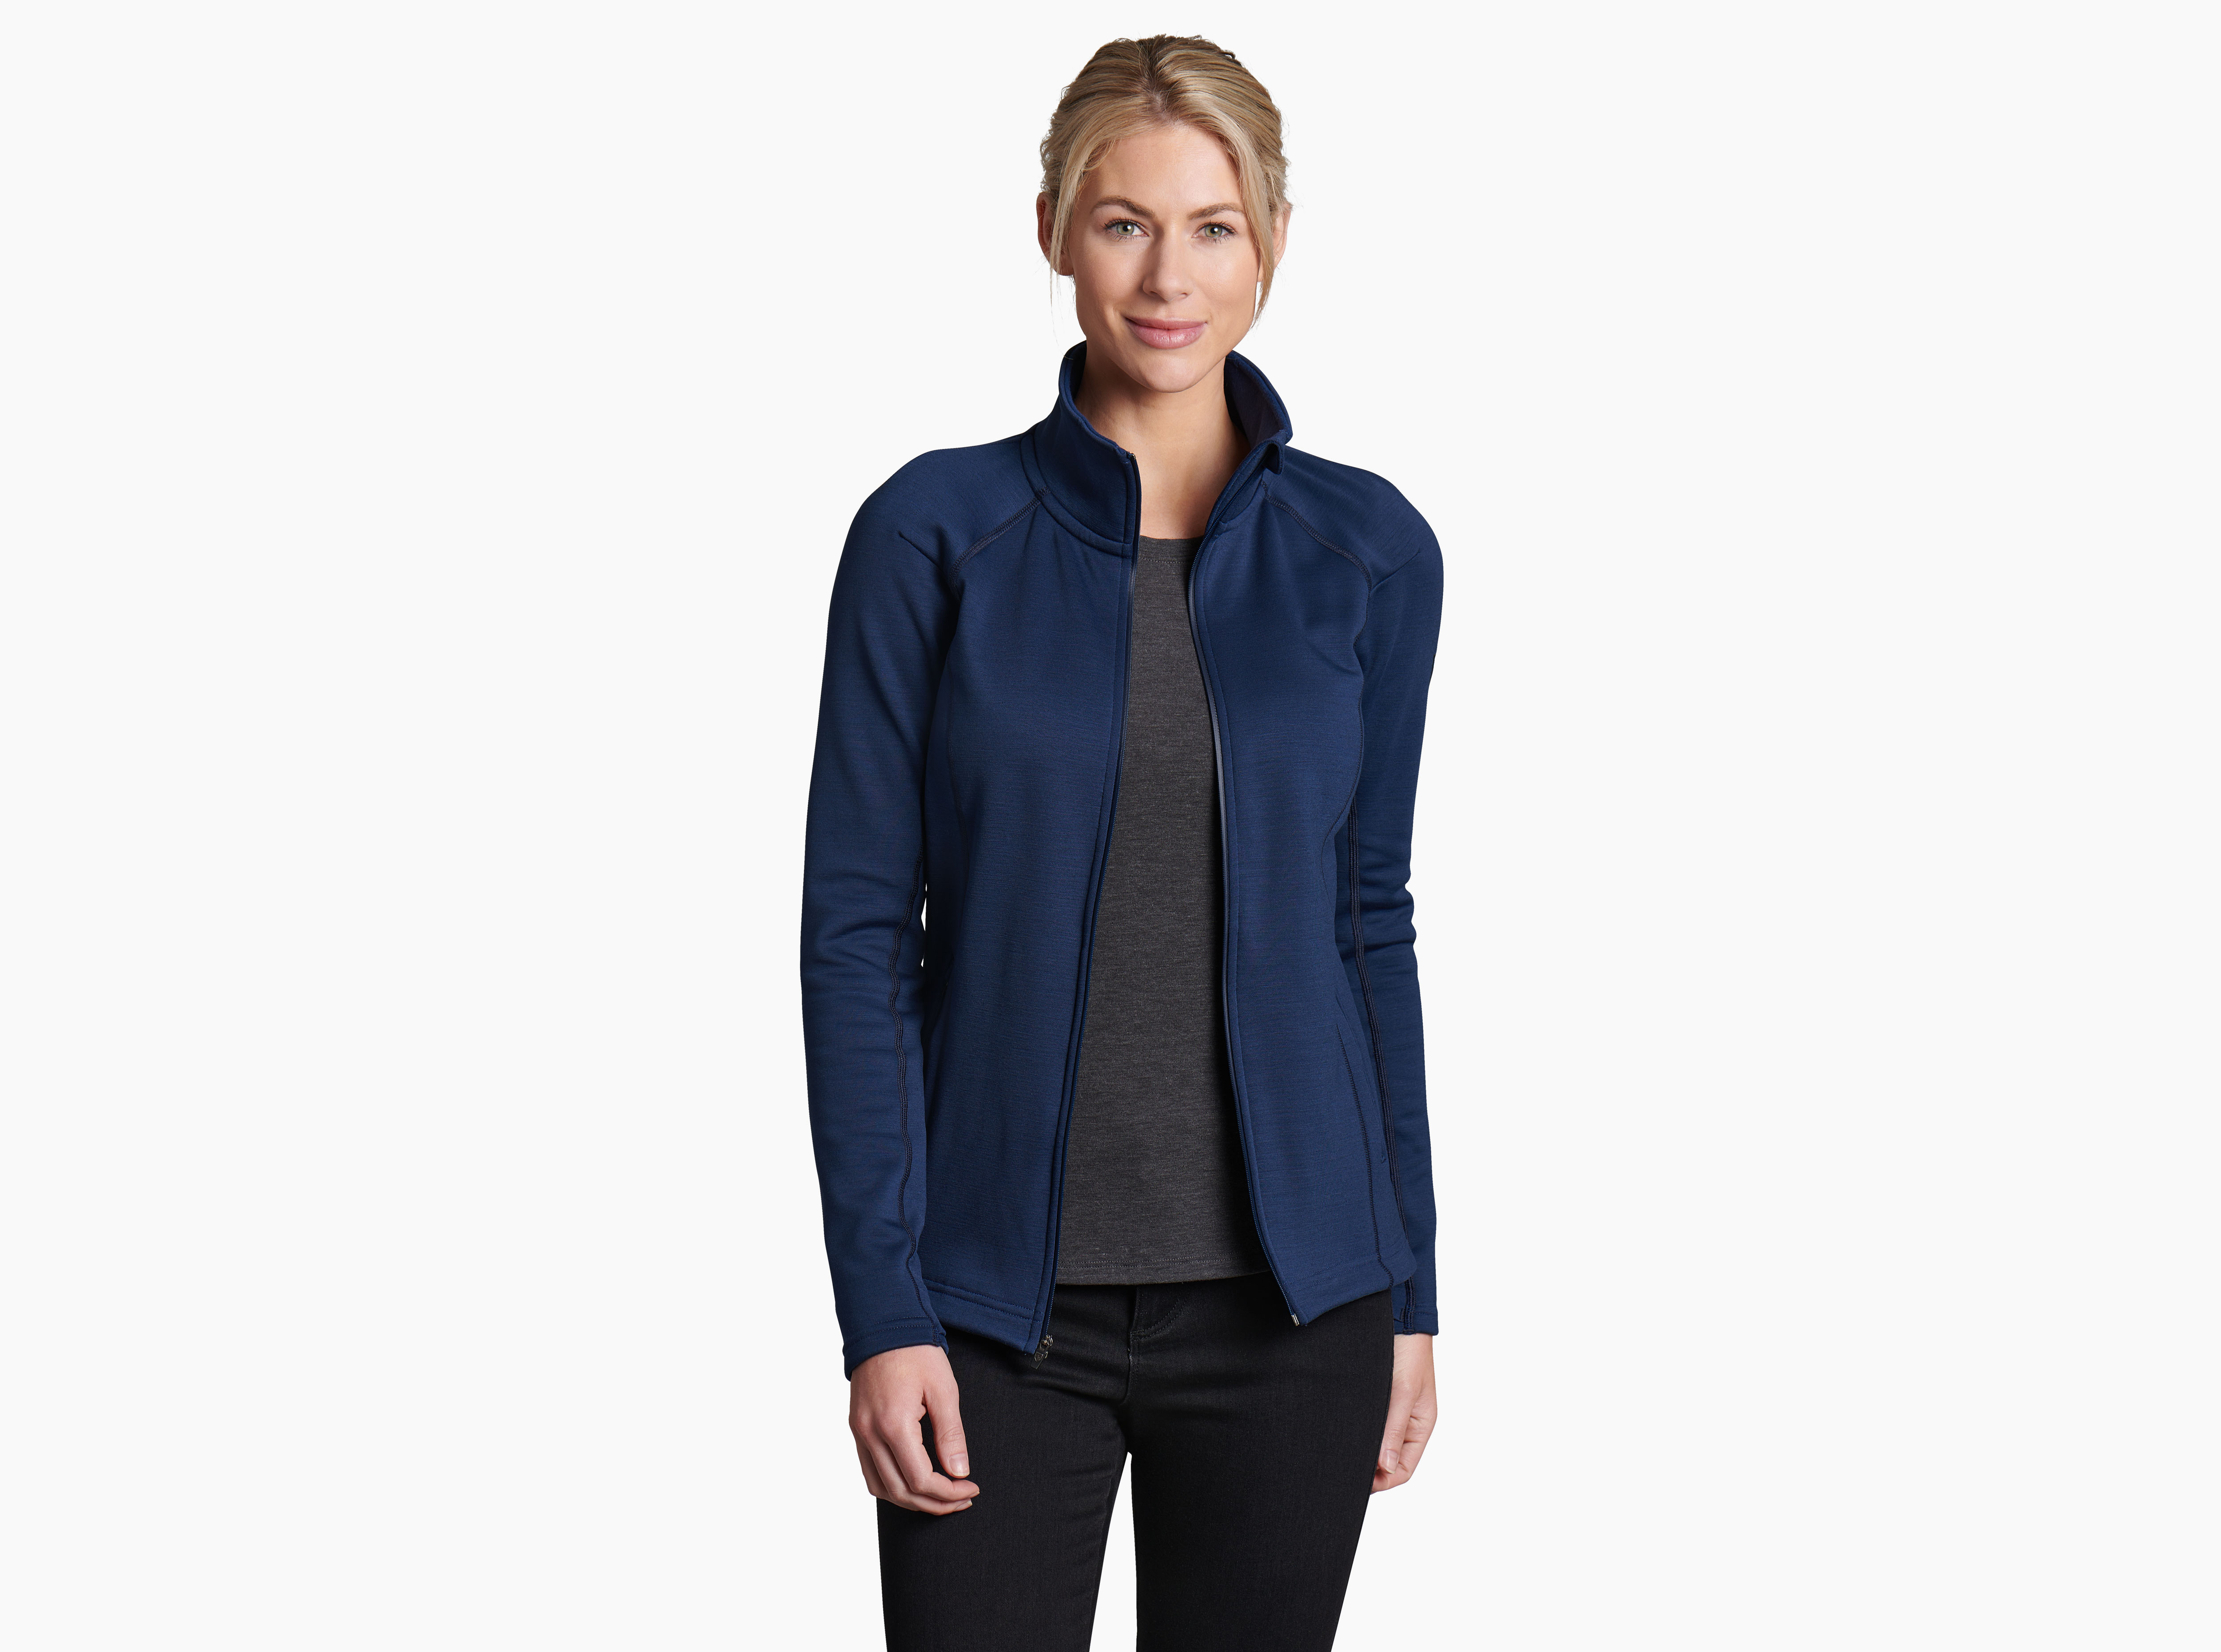 KUHL KOZET Long Jacket Wool Blend Women’s Small S Gray New $189.00 